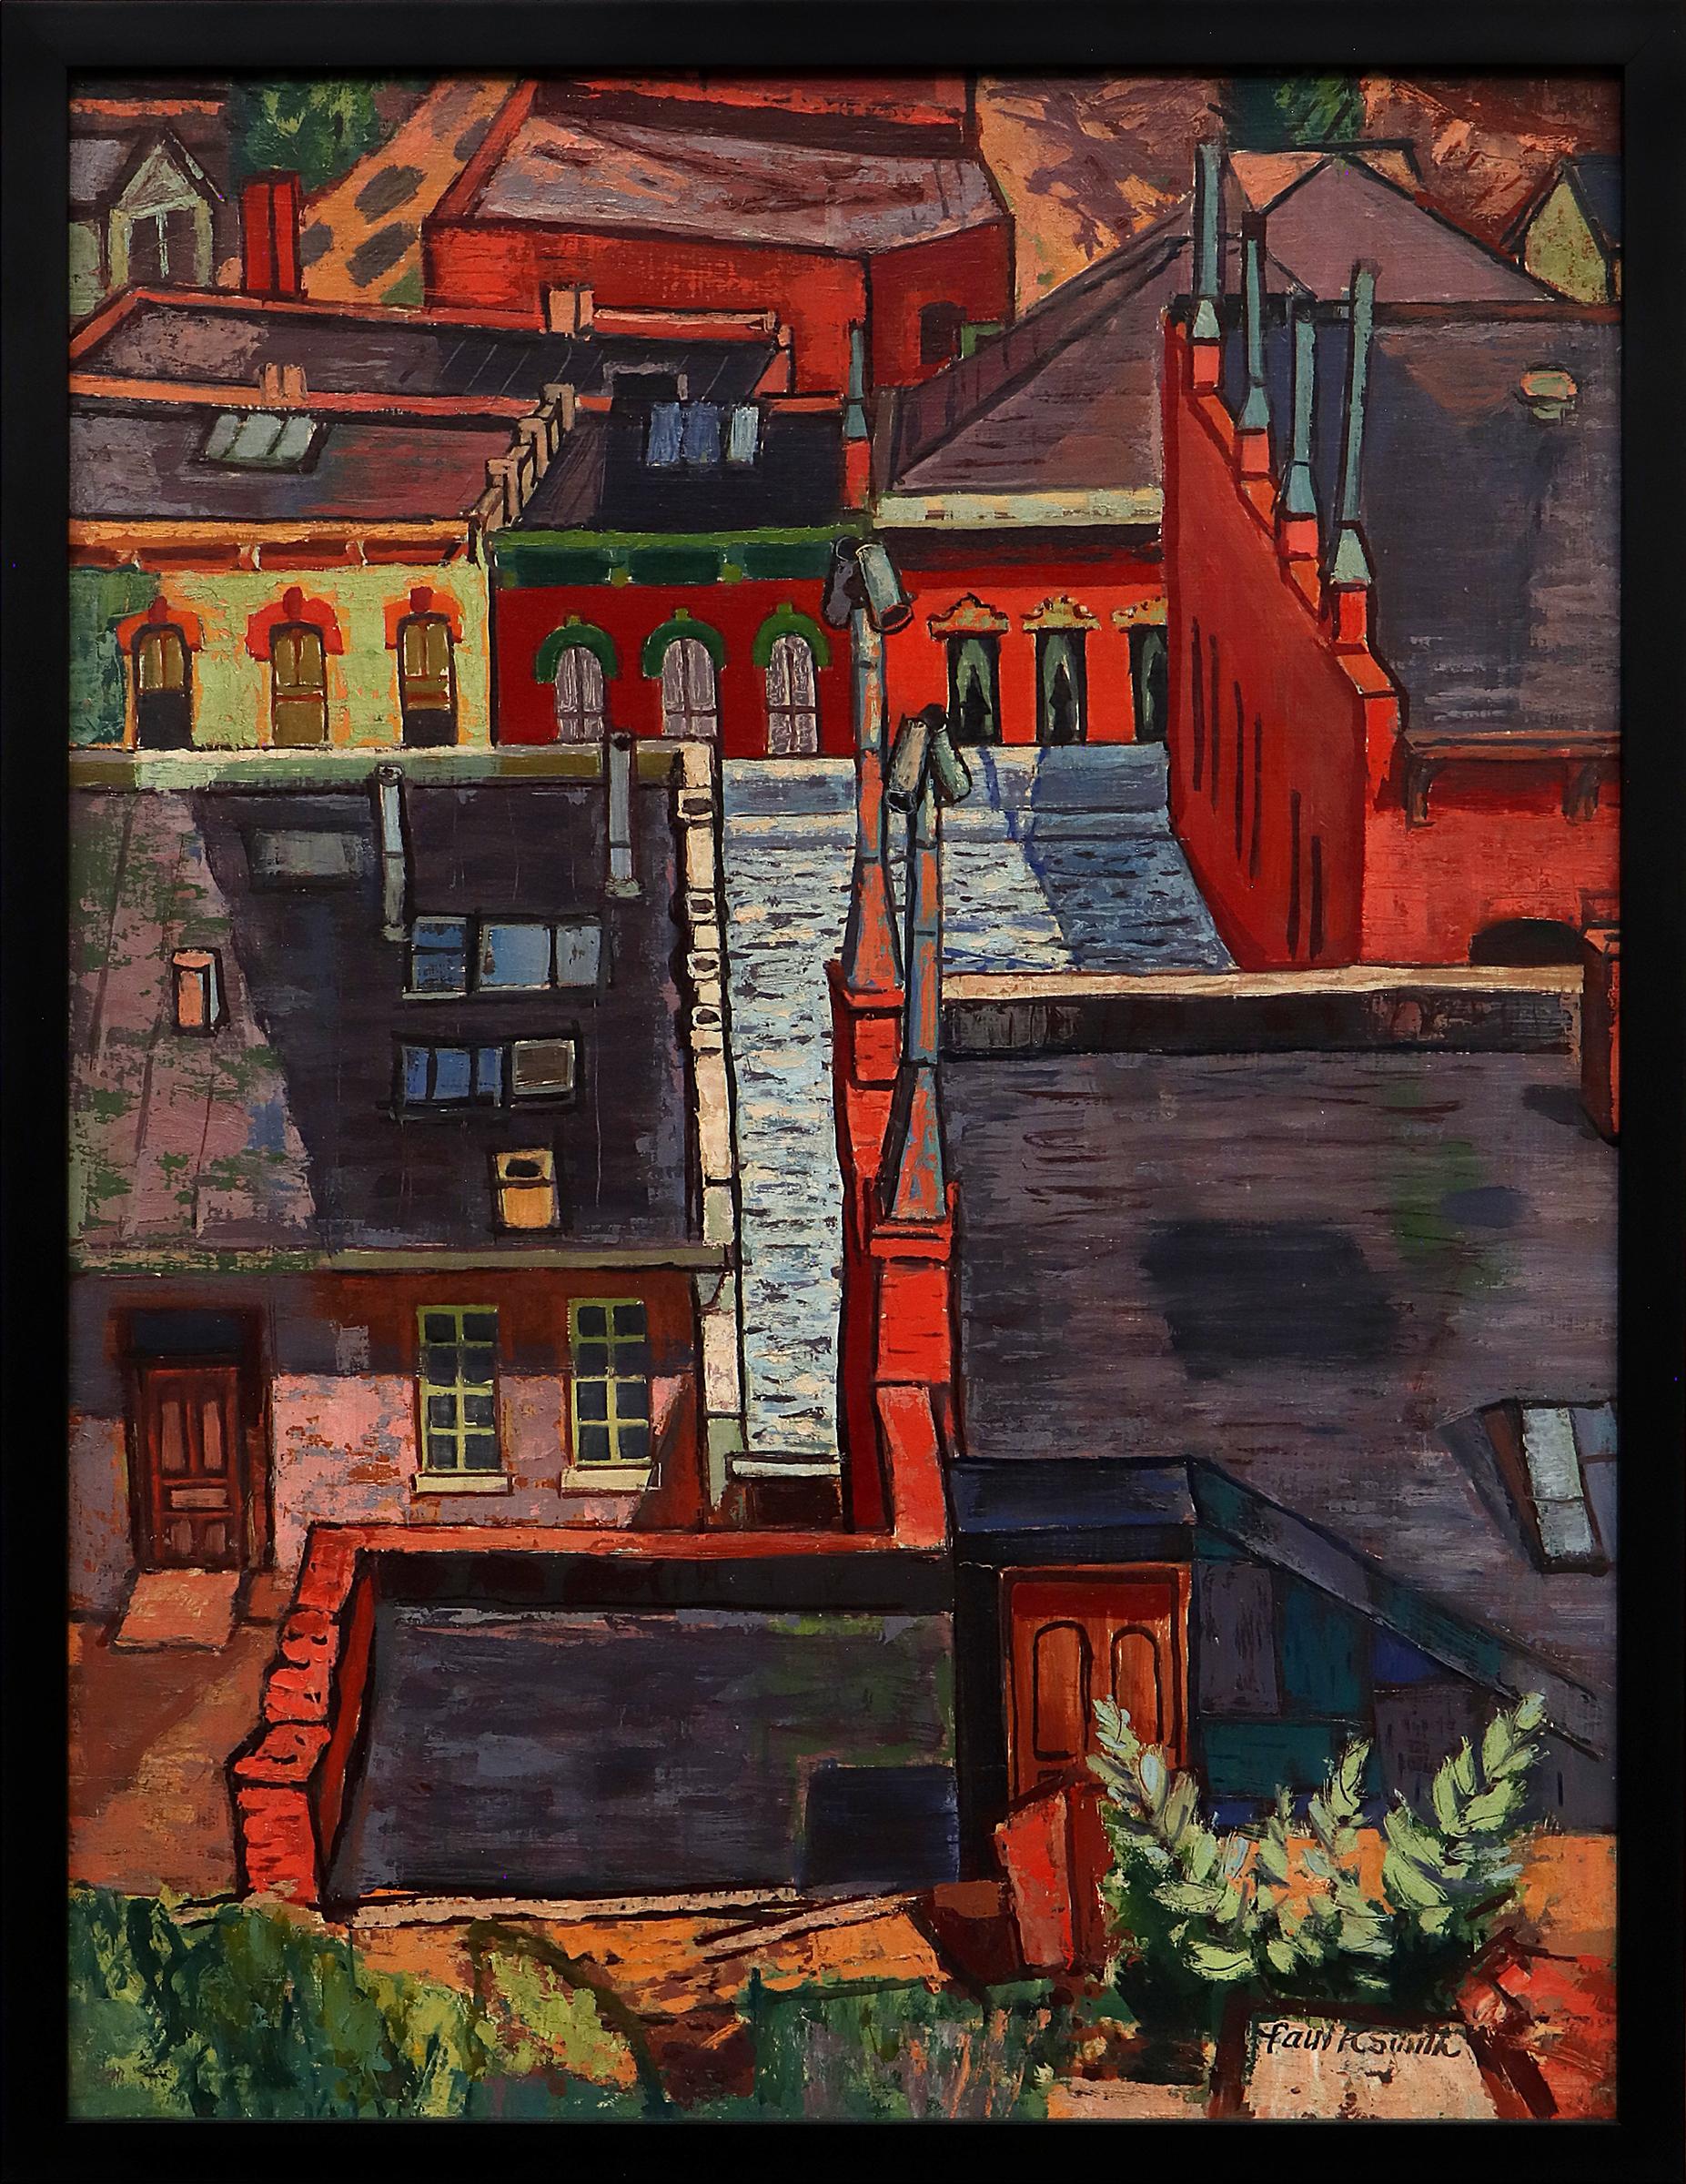 Paul K Smith Abstract Painting – Central City, Colorado, Modernistische Stadtlandschaft der 1950er Jahre, Ölgemälde mit Gebäuden